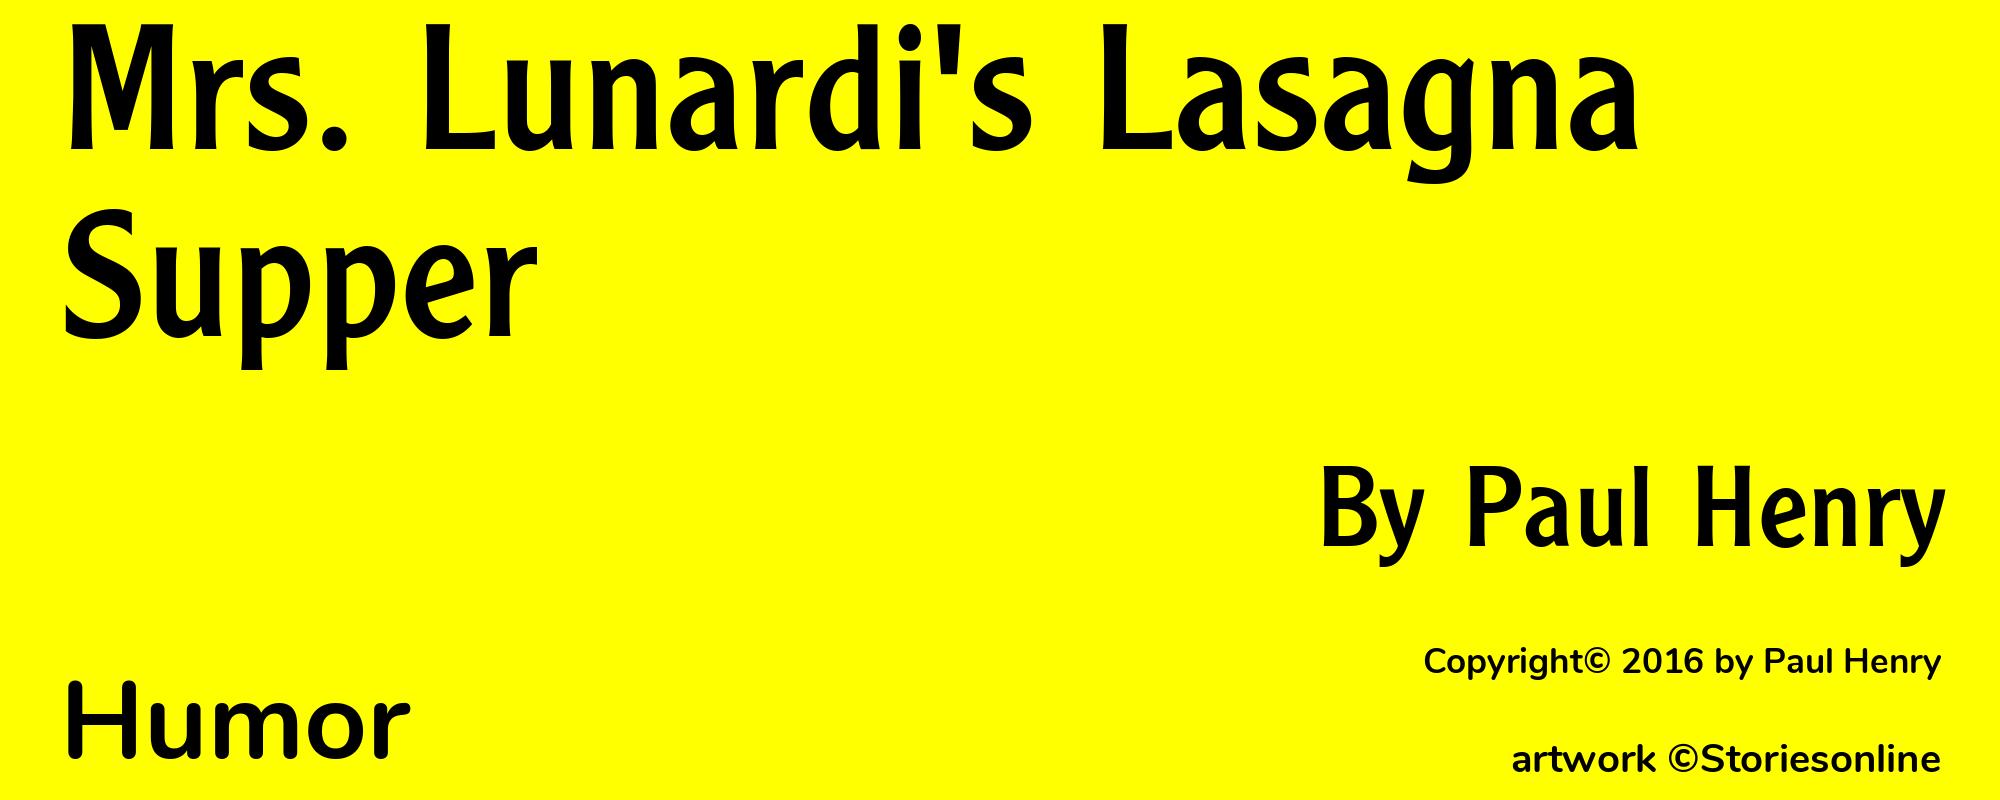 Mrs. Lunardi's Lasagna Supper - Cover